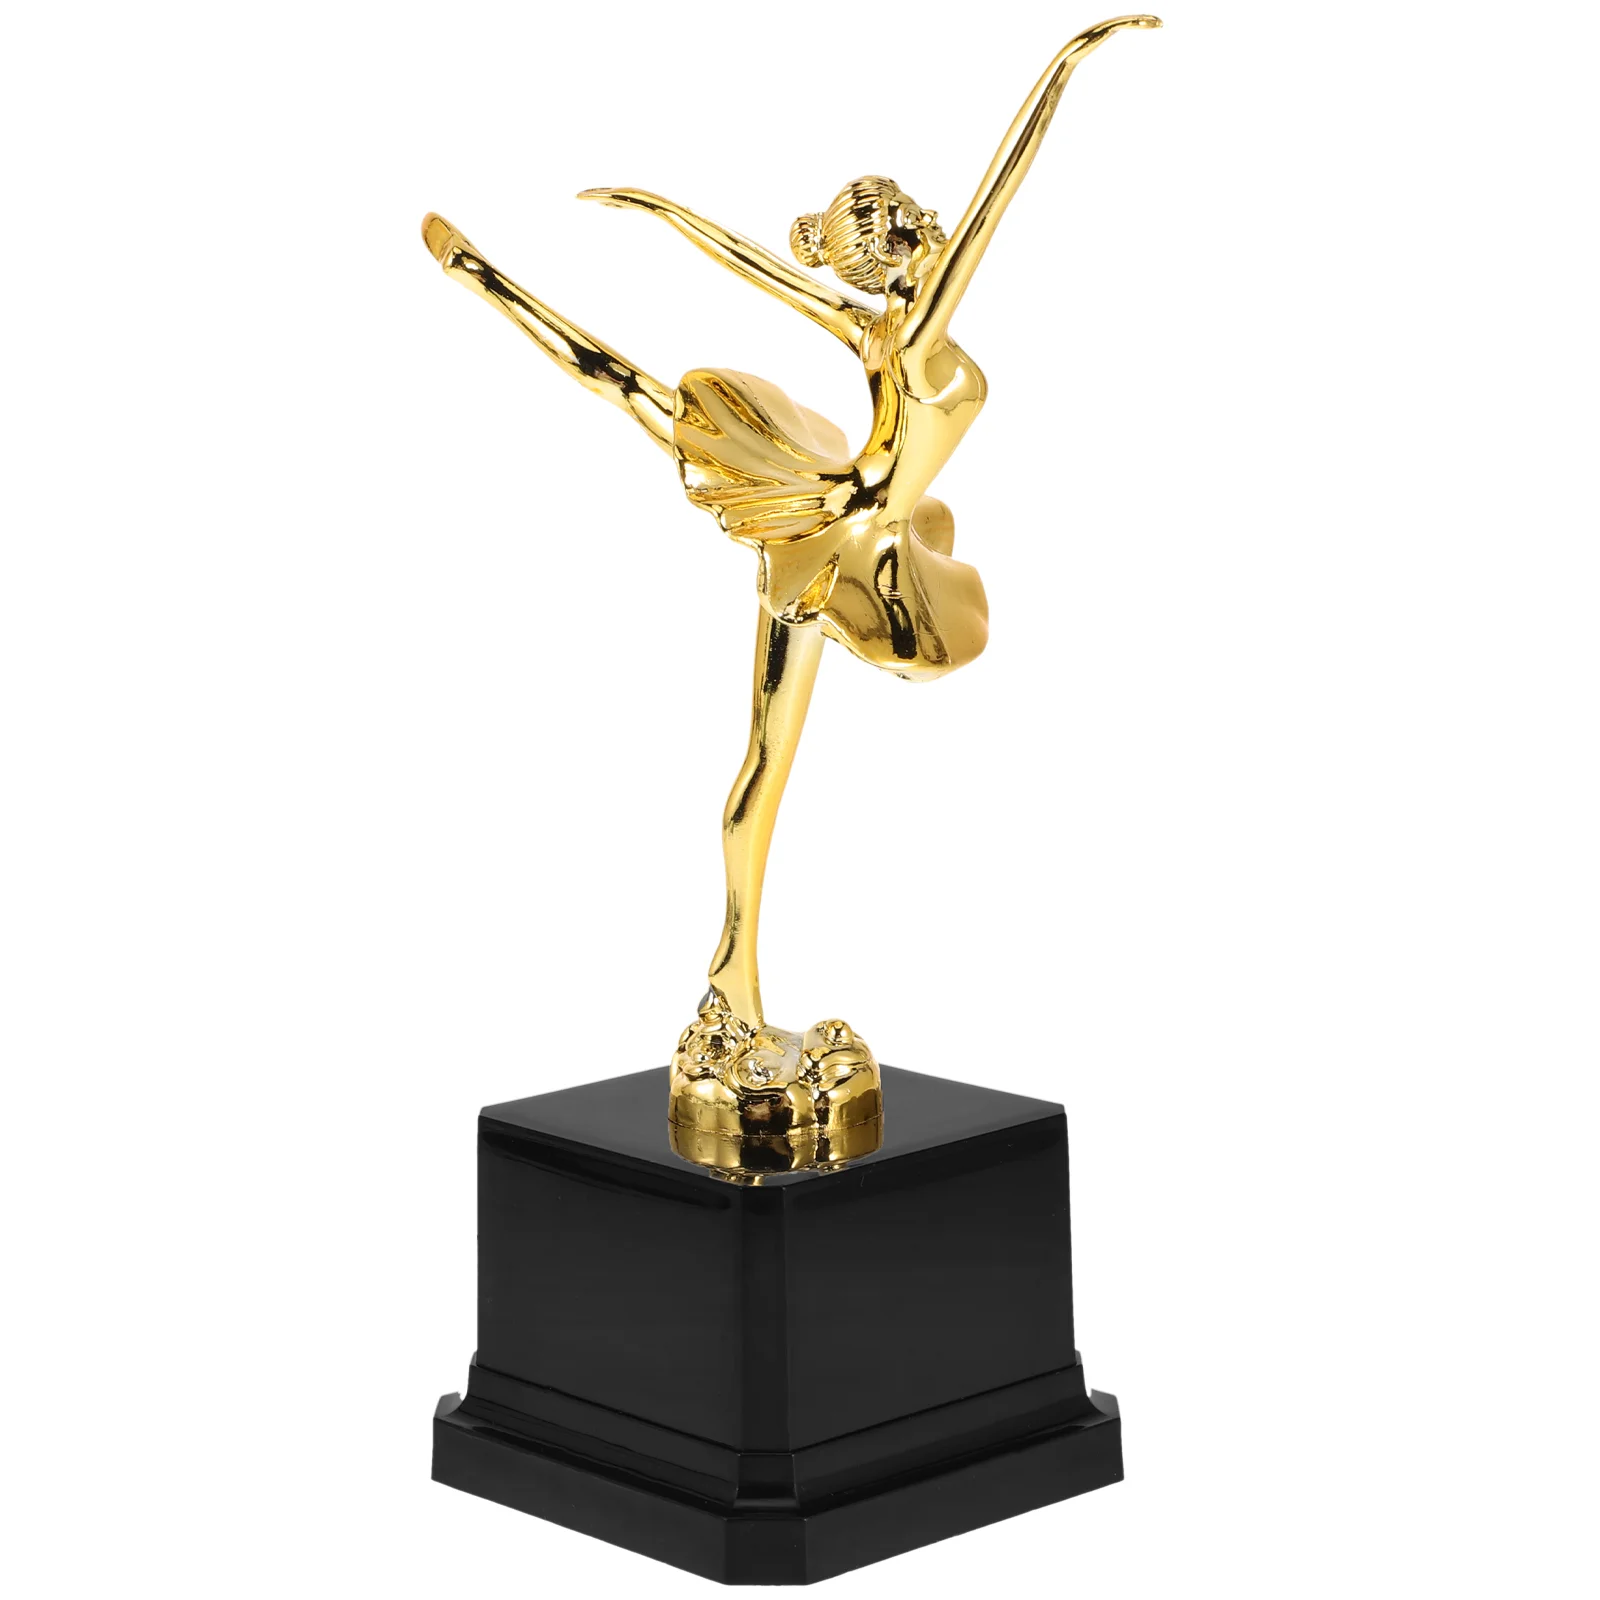 

Награды, трофеи, соревнования, искусственные танцевальные спортивные игрушки, балета, искусственный Золотой пластиковый трофей, танцы для игр